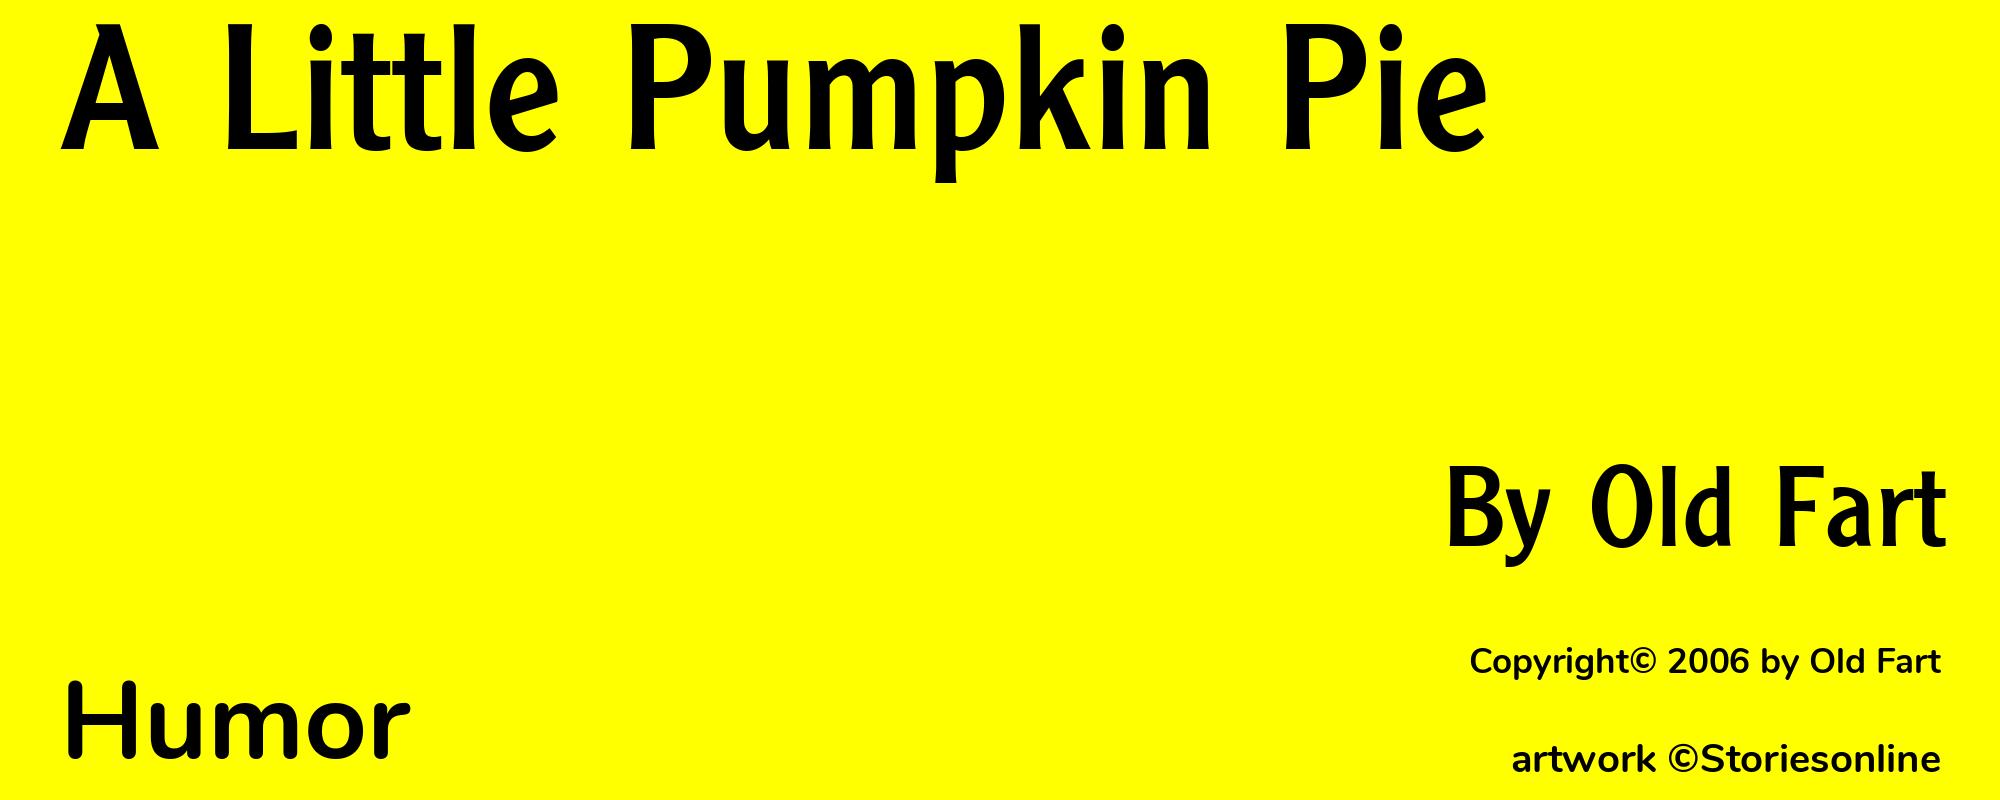 A Little Pumpkin Pie - Cover